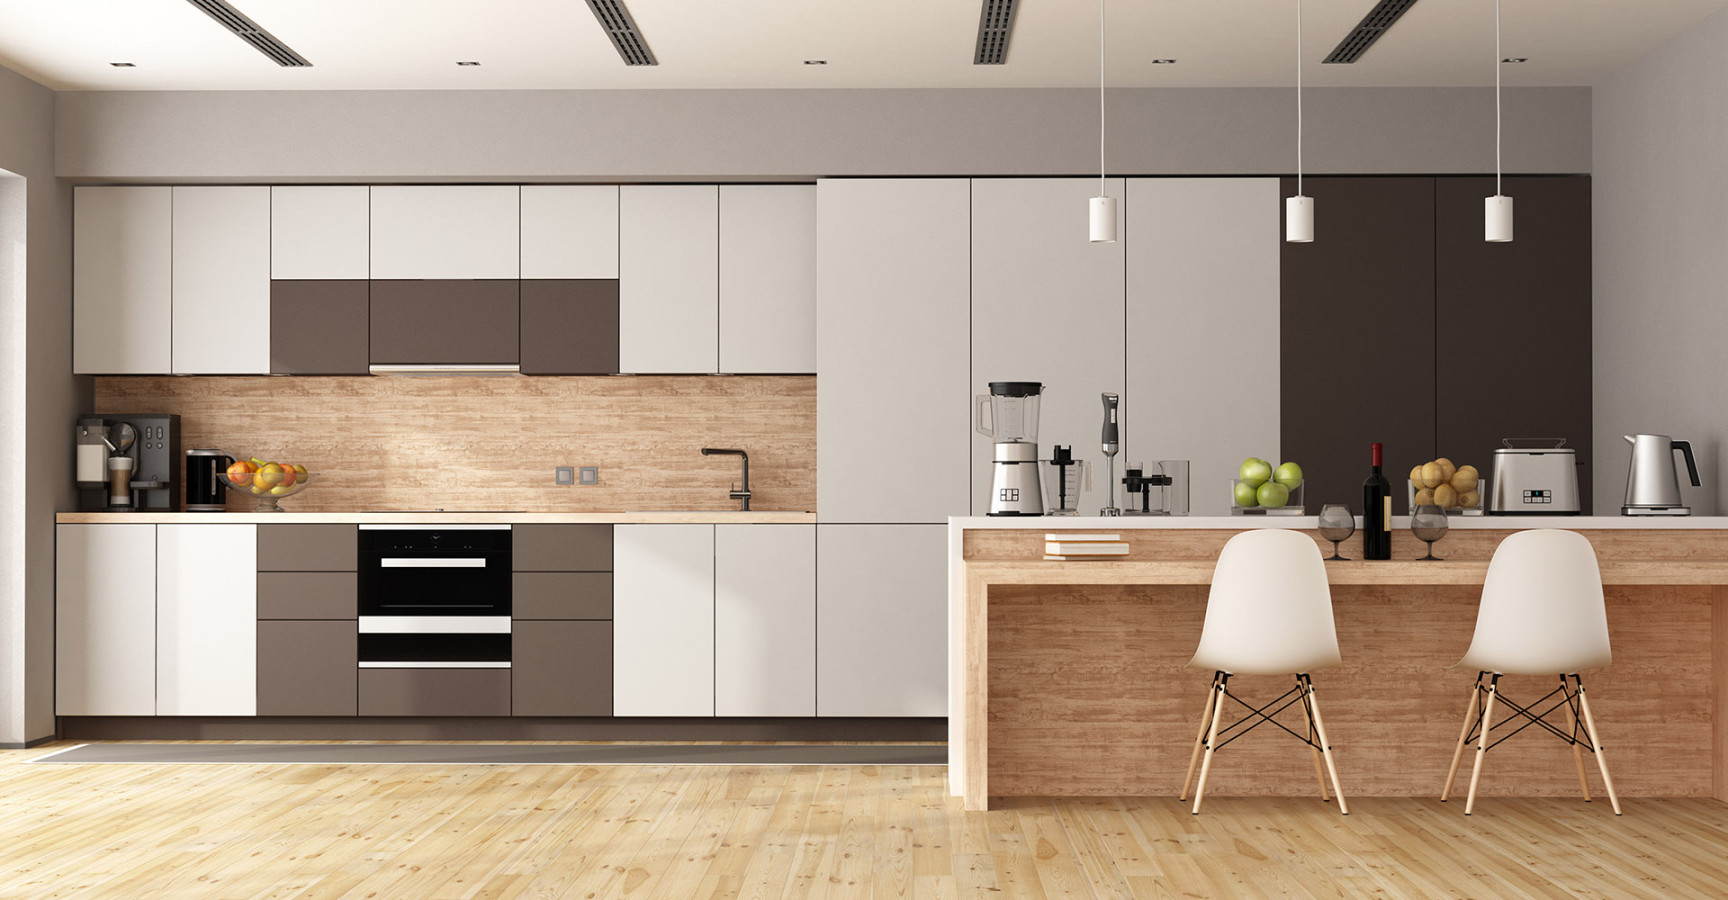 Kitchen Interior Designs  Best Modular Kitchen Interiors for Home